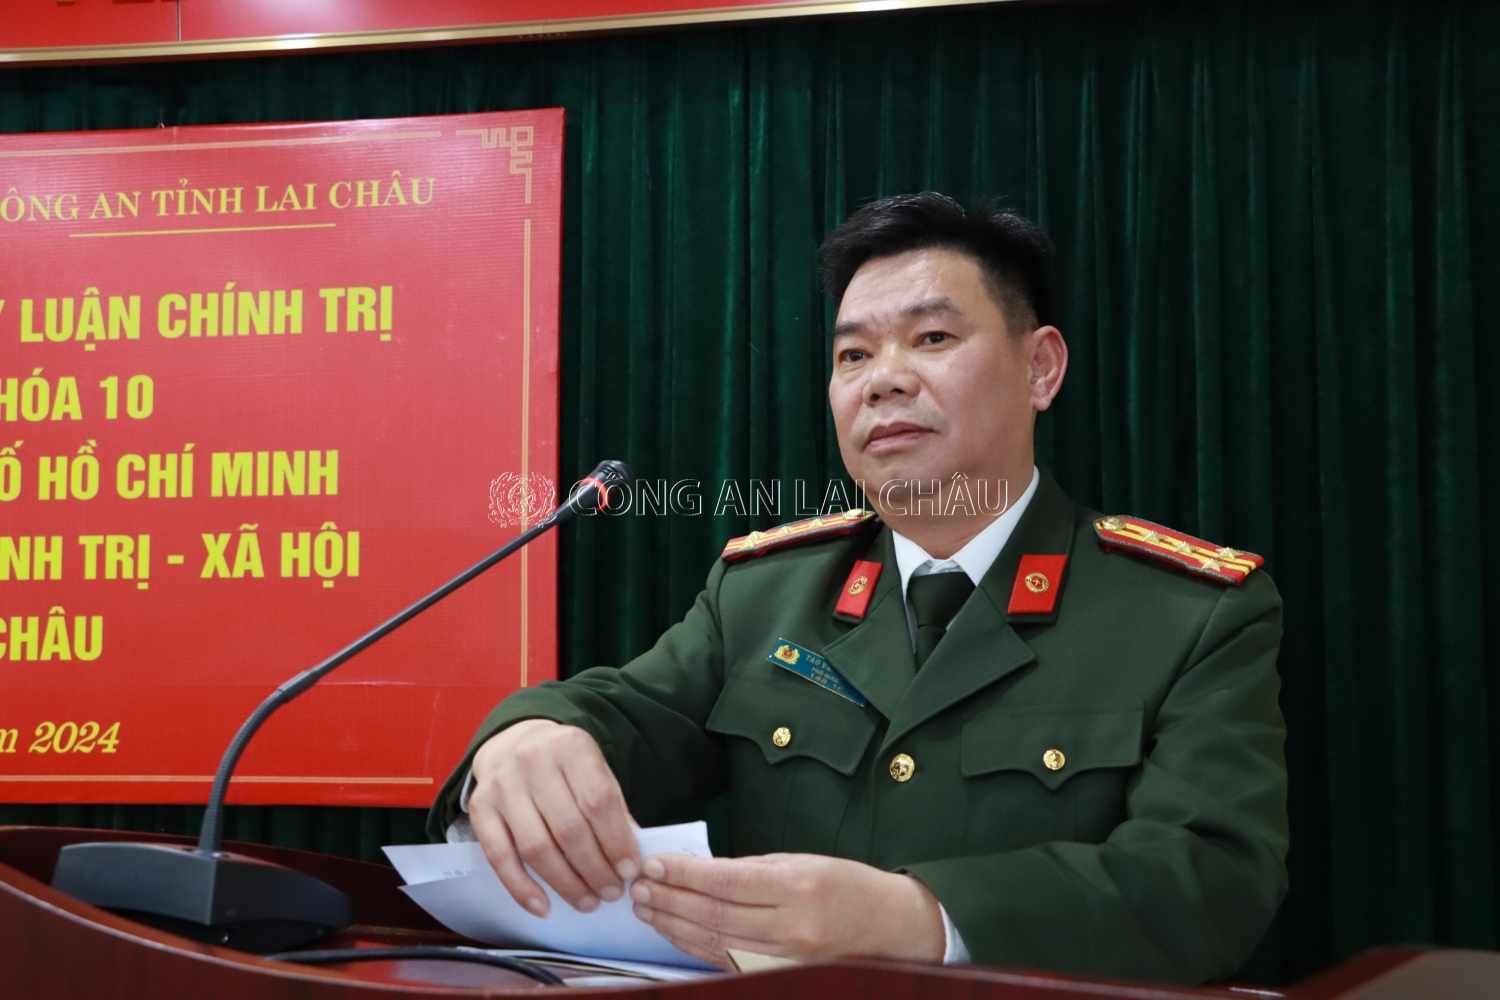 Đại tá Tao Văn Trường - Phó giám đốc Công an tỉnh phát biểu tại chương trình